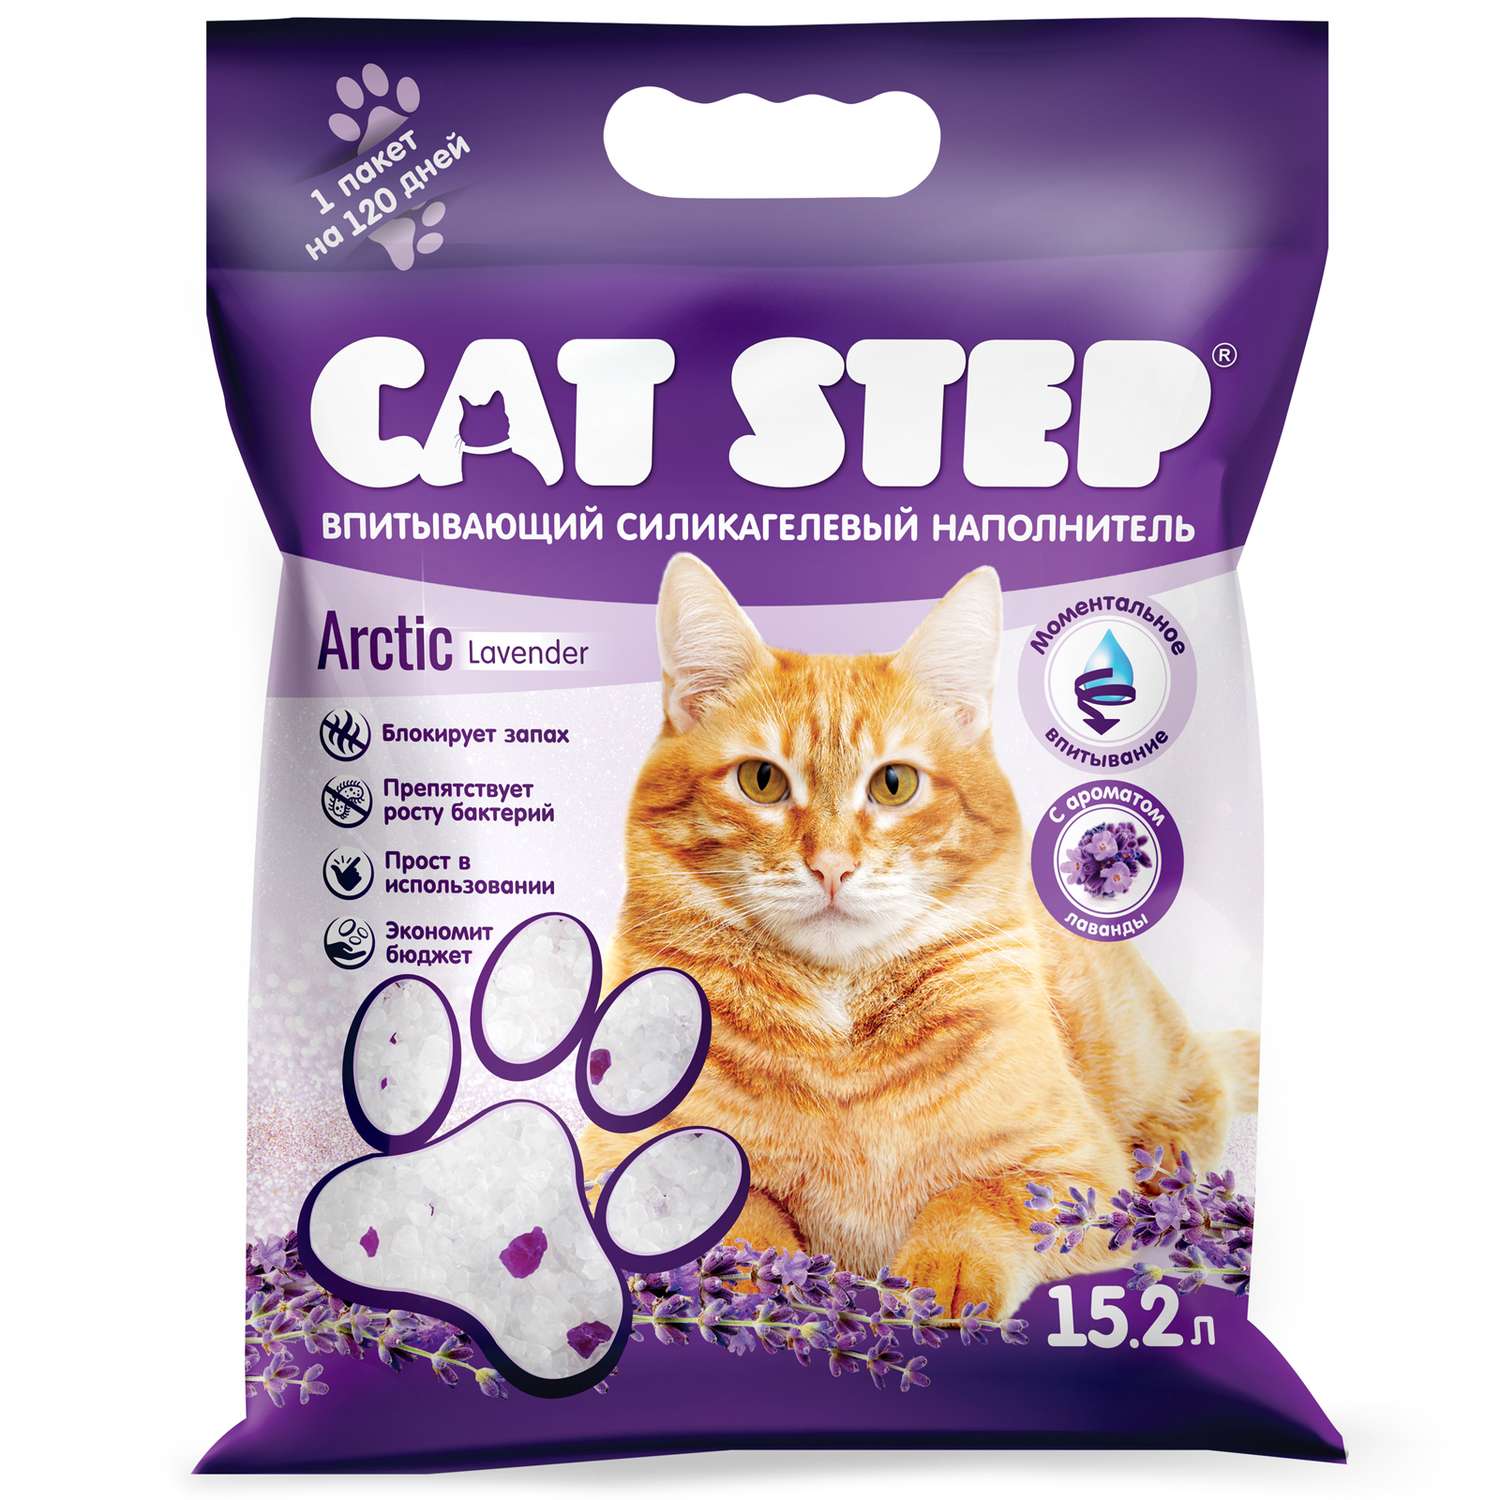 Наполнитель для кошек Cat Step Arctic Lavender впитывающий силикагелевый 15.2л - фото 1